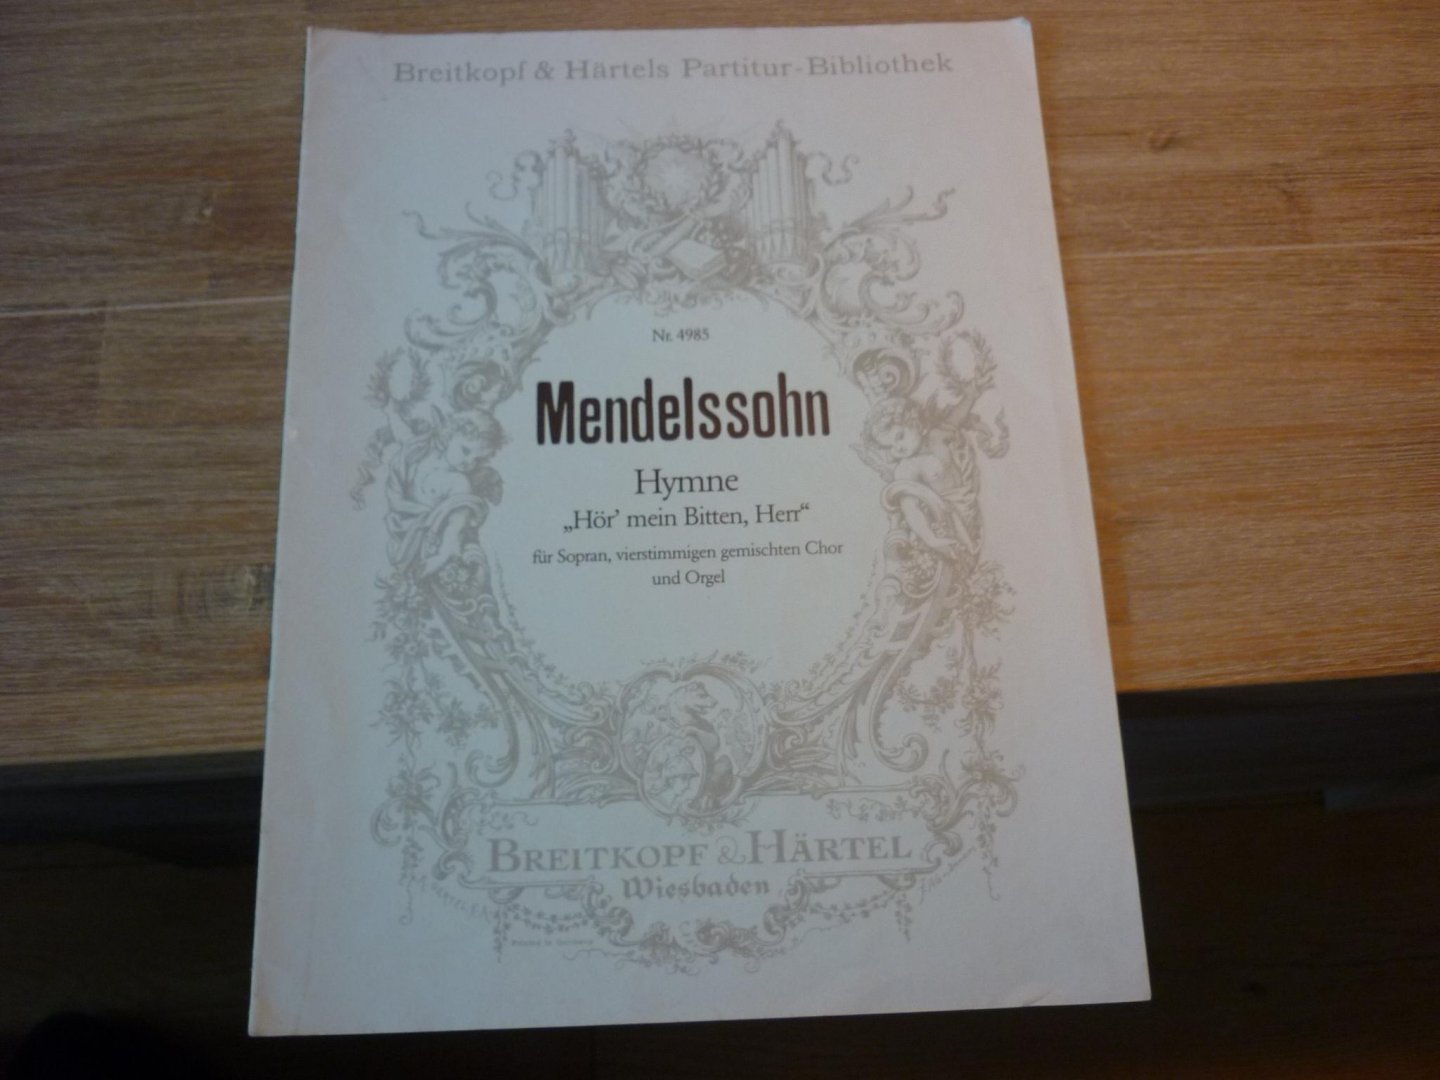 Mendelssohn-Bartholdy, Felix; (1809-1847) - HYMNE "Hor' mein Bitten, Herr"; fur Sopran, viersimmigen gemischten Chor und Orgel